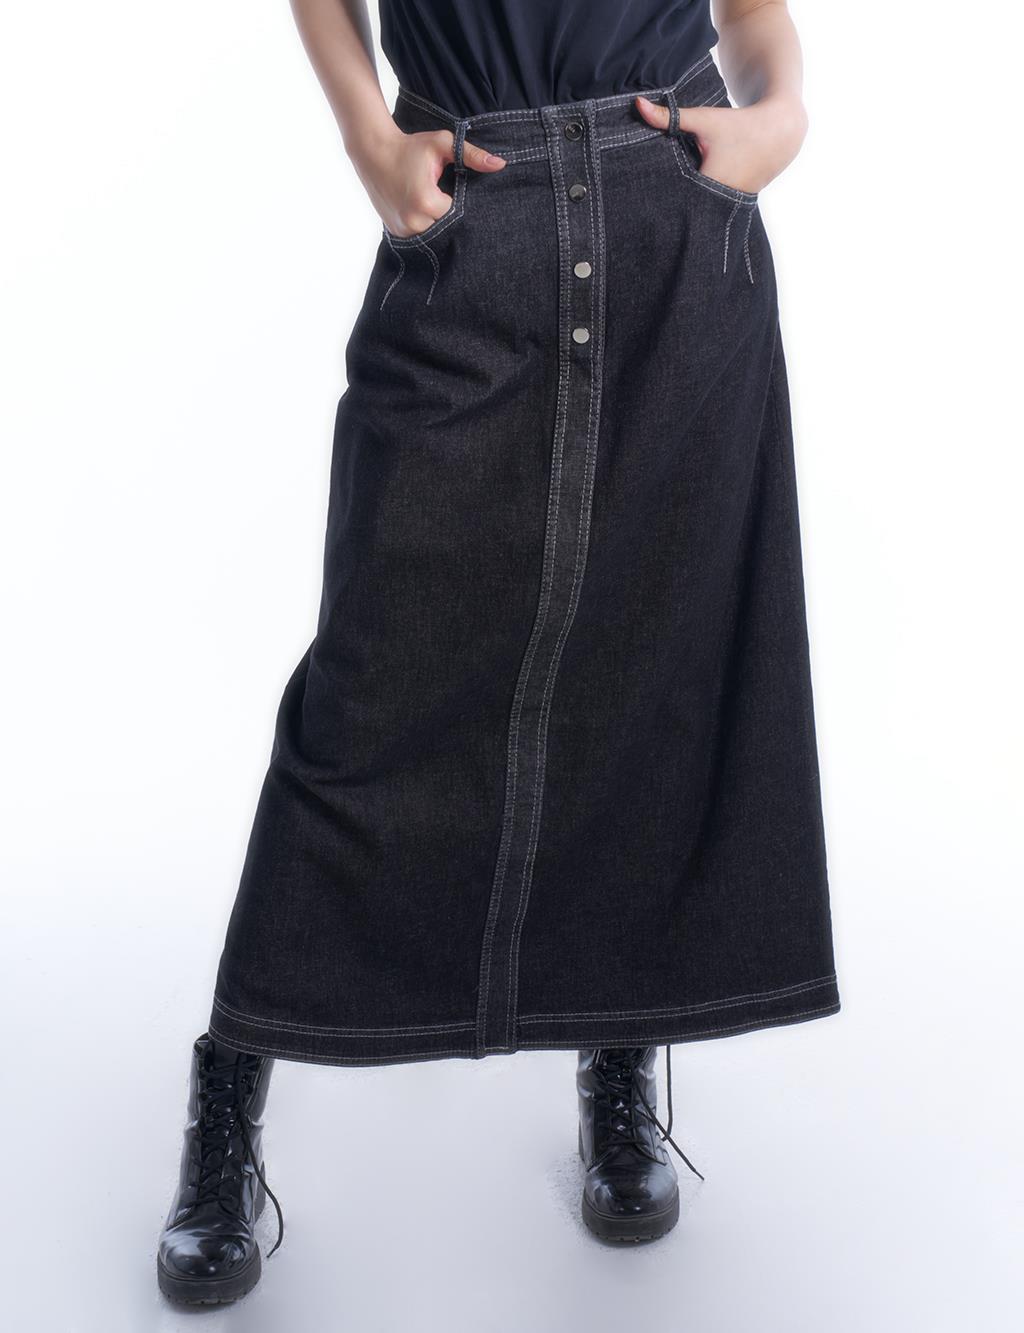  Pocket-Detailed Denim Skirt in Black